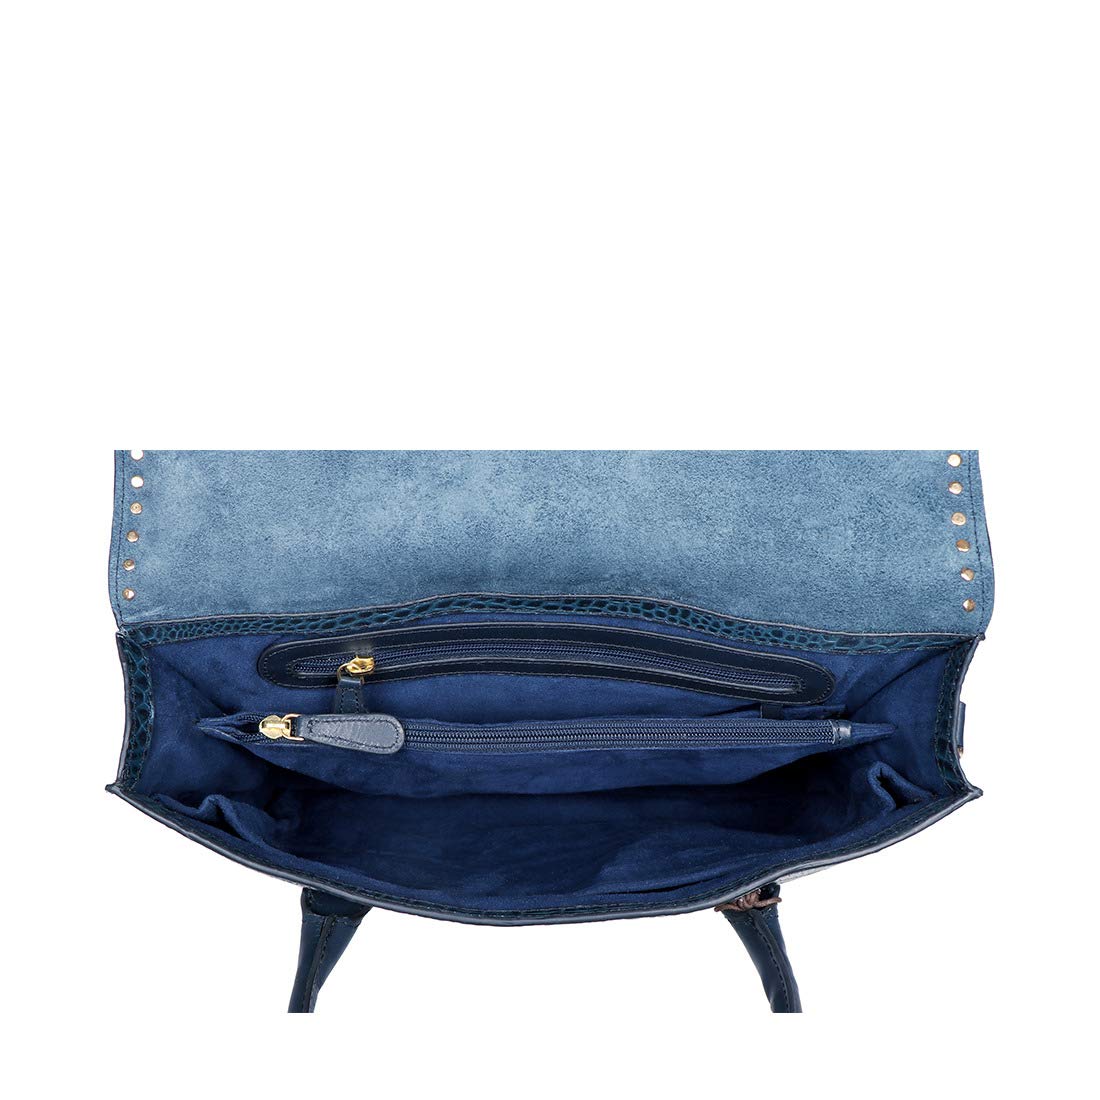 Hidesign Women's Shoulder Bag (Blue)